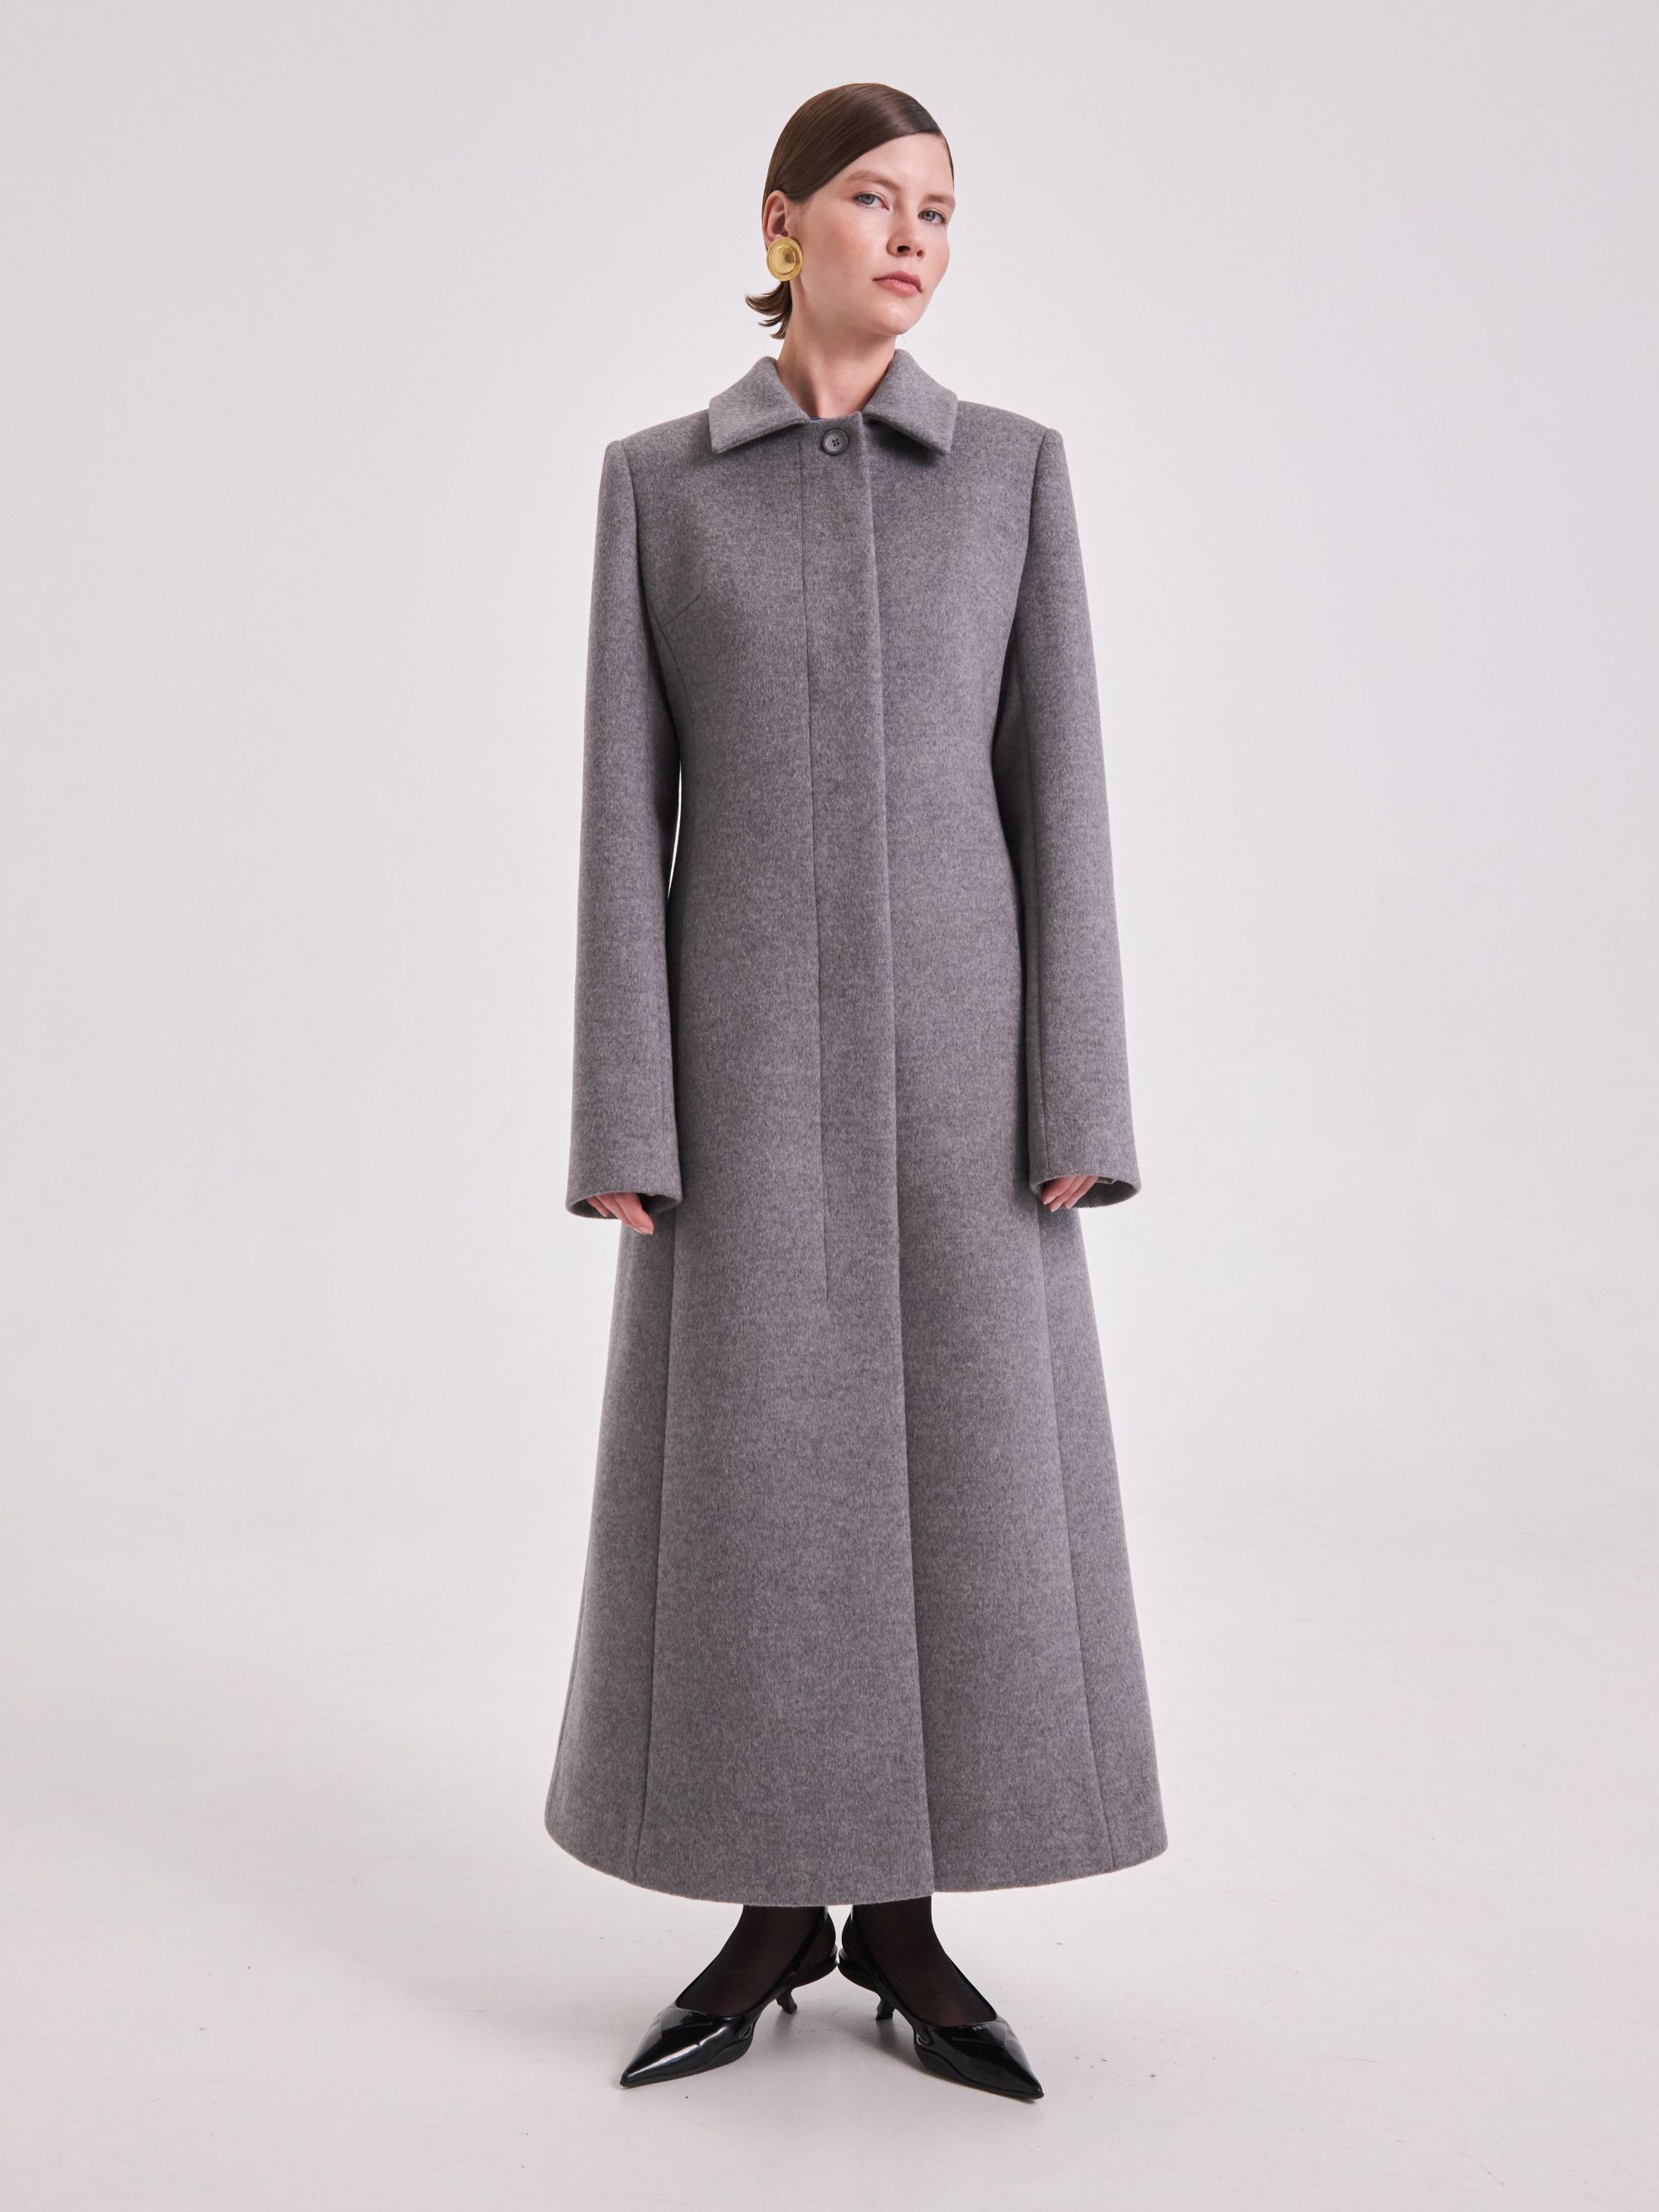 Coat, pattern №1063 buy on-line